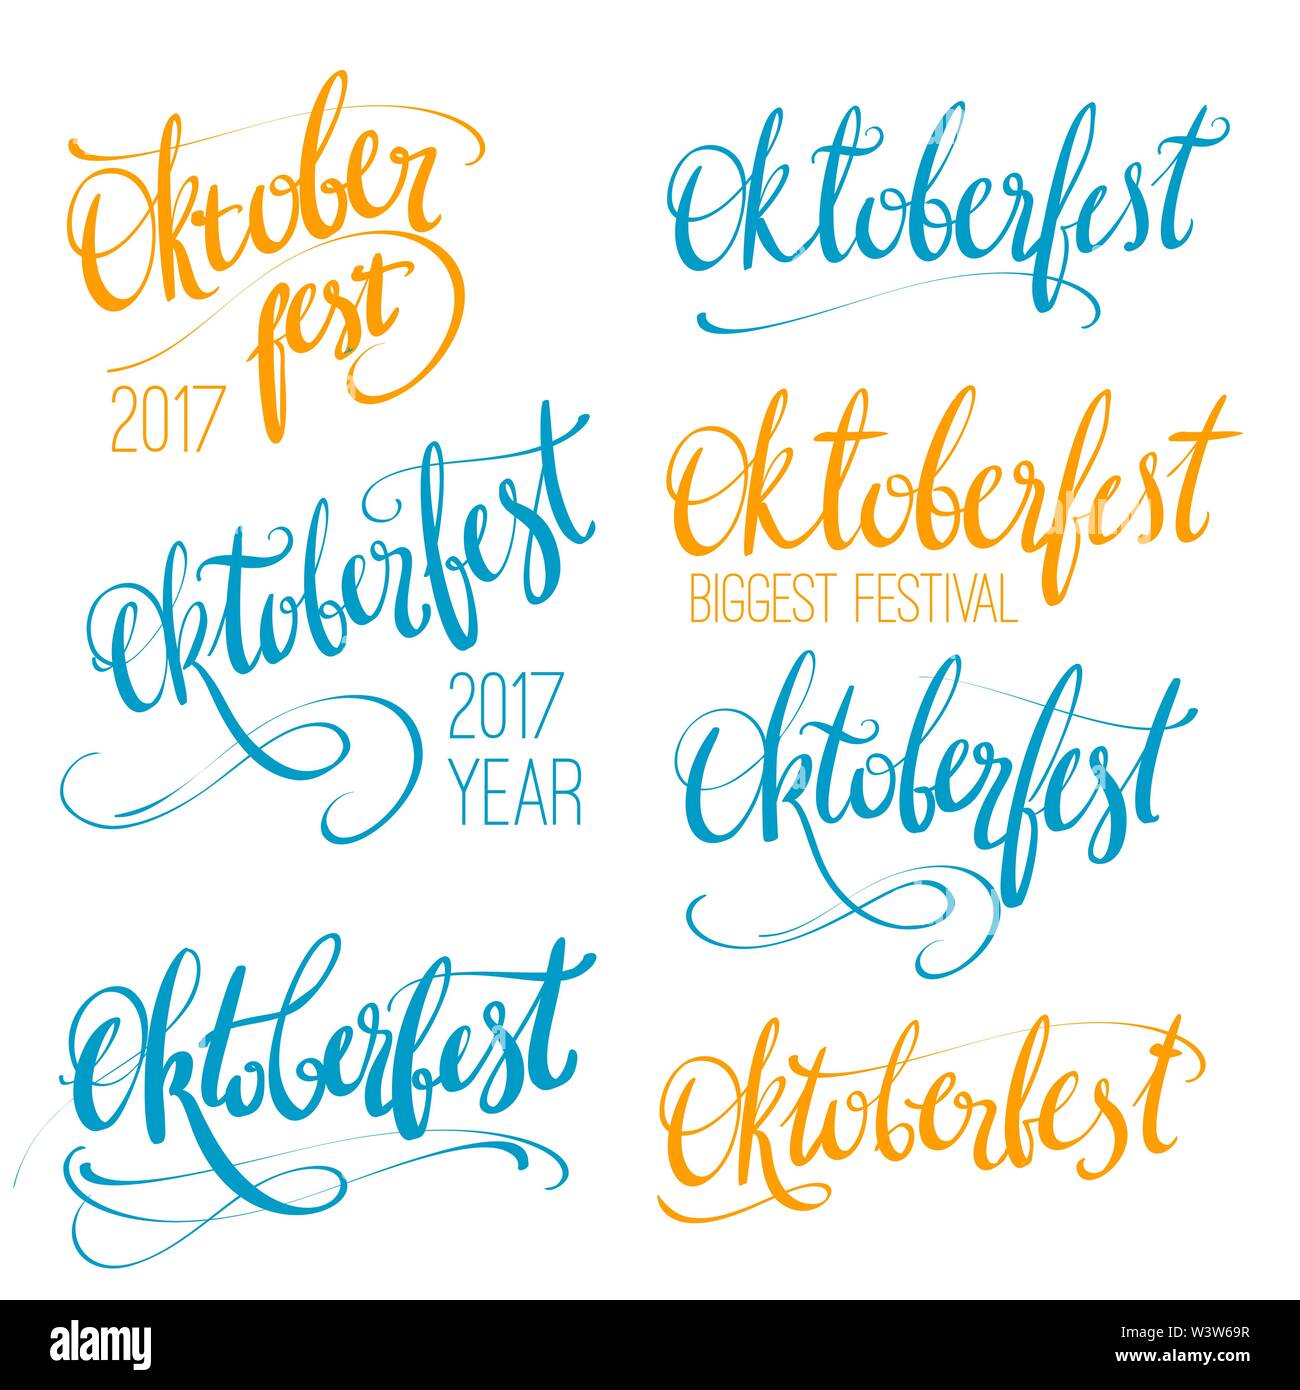 Oktoberfest vector hand lettrage, pinceau calligraphie inscription pour bannières et logo design. Colorful bleu, orange, jaune mot Oktoberfest Illustration de Vecteur